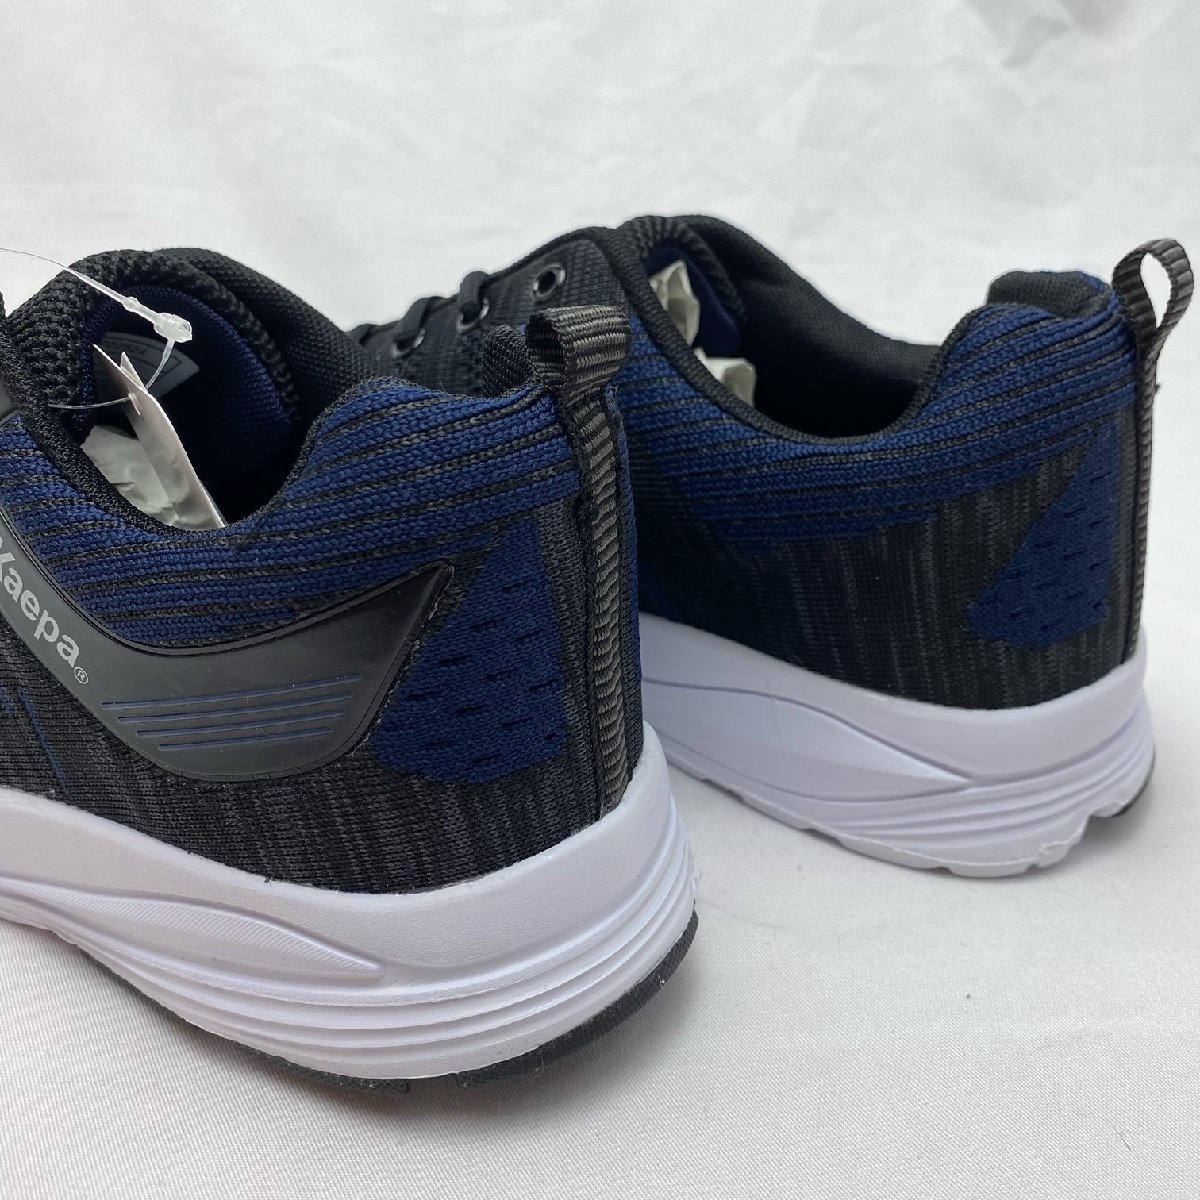 [ Hokkaido * Okinawa кроме бесплатная доставка ][ новый товар ]Kaepa мужской спортивные туфли водоотталкивающий 25.0cm BK/NV*2524